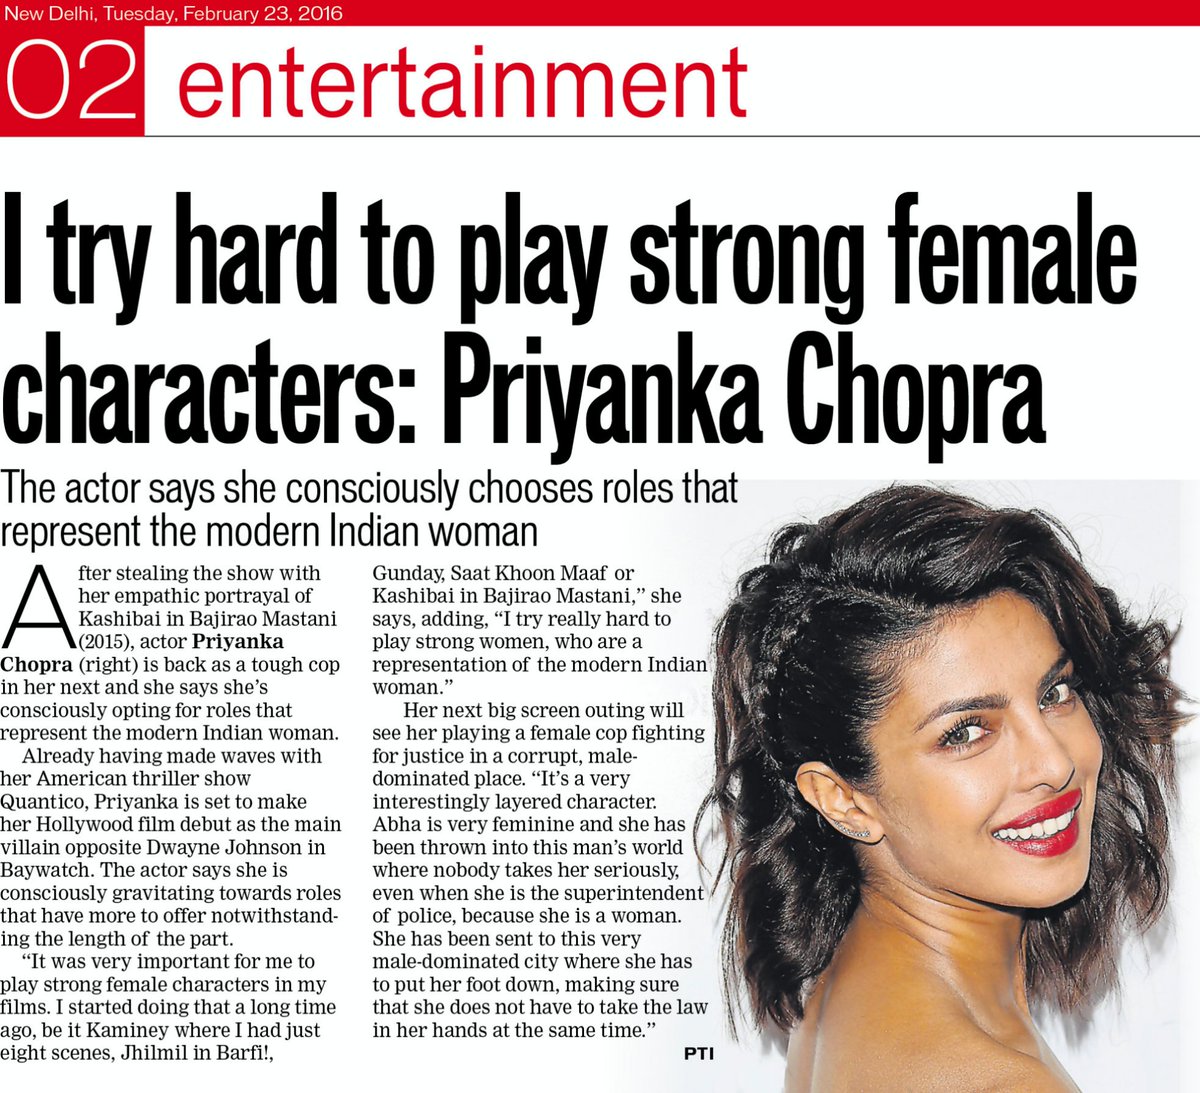 Priyanka Chopra's complete style evolution - Daily Times